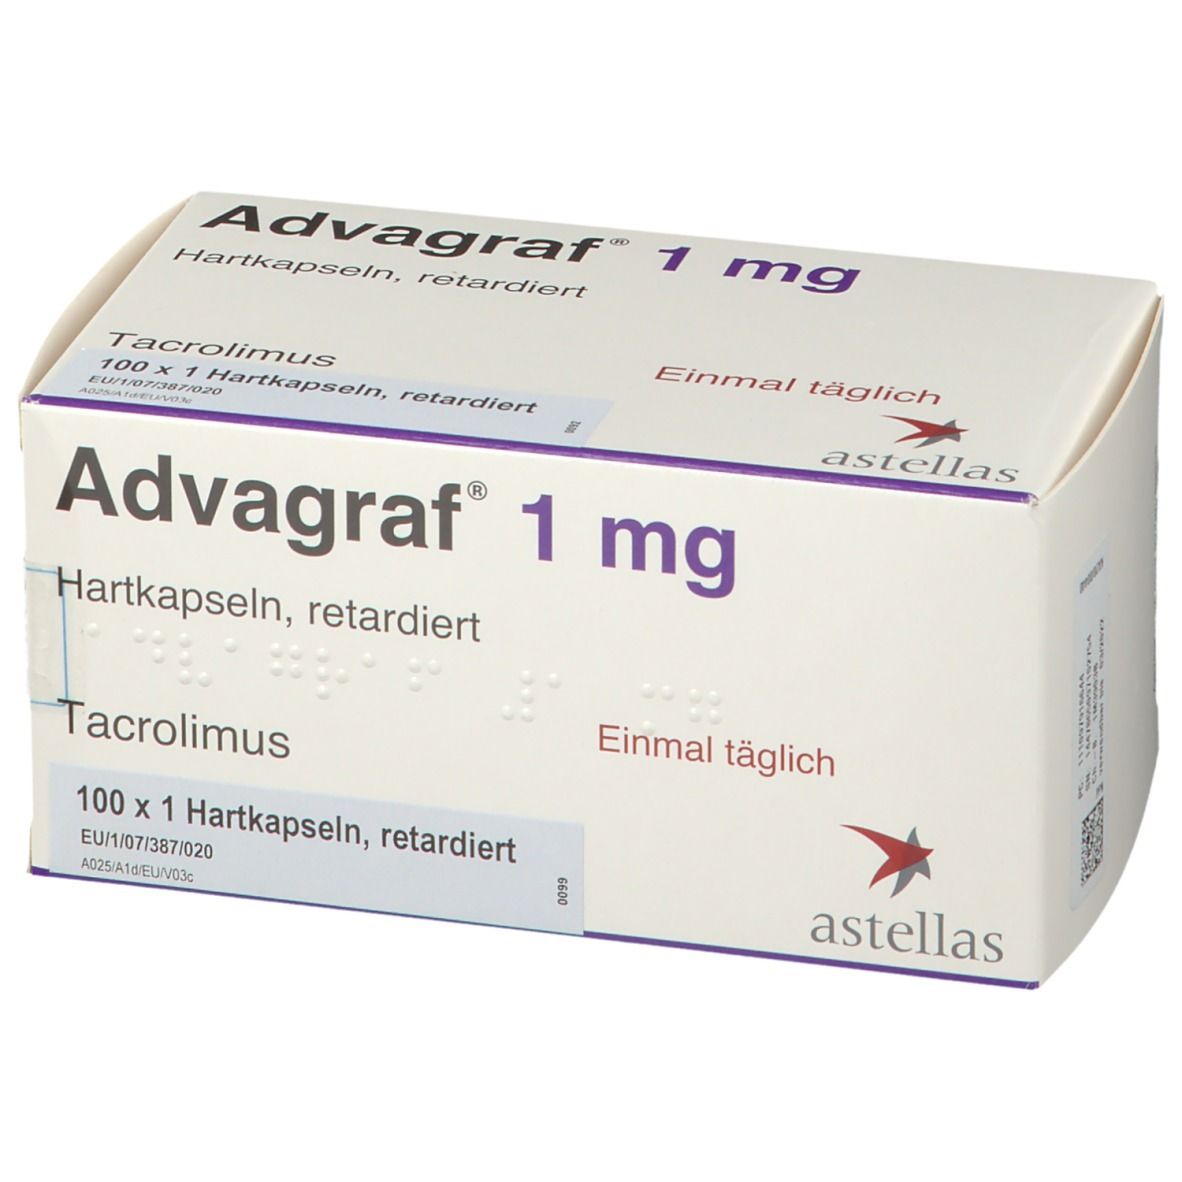 Advagraf 1 mg Retardiert 100 St mit dem E-Rezept kaufen - SHOP APOTHEKE